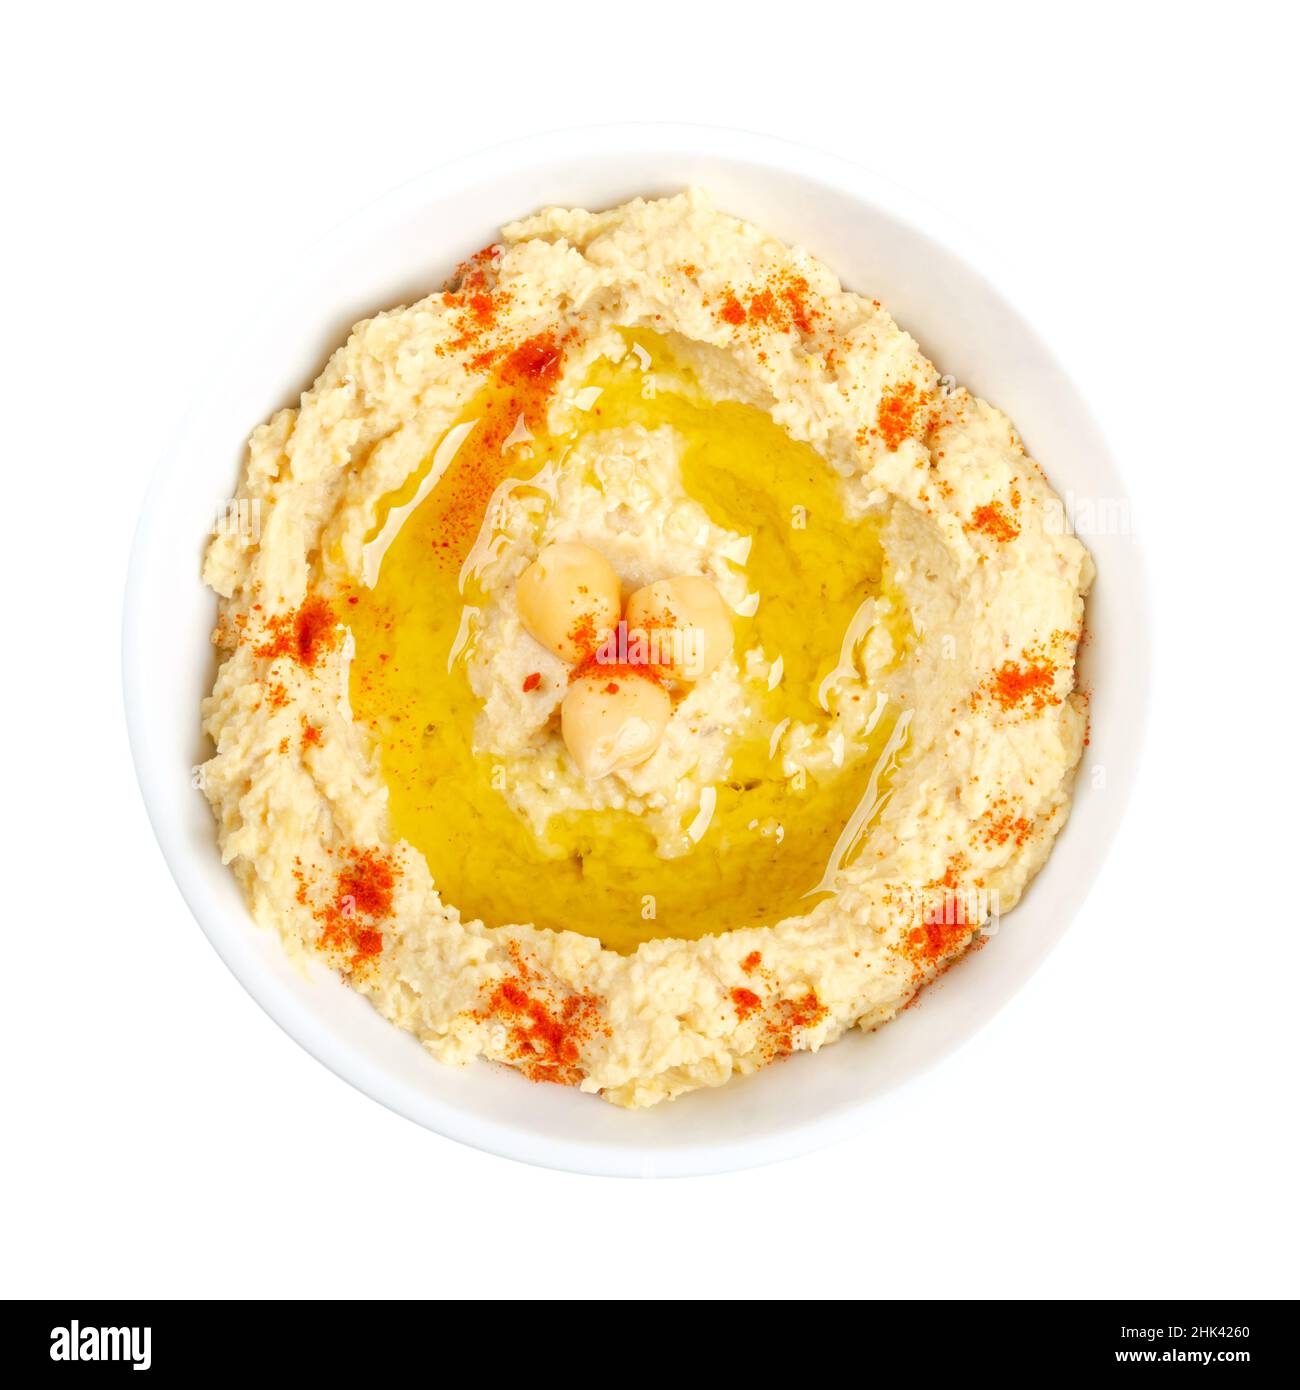 Trempez le houmous avec de la poudre de paprika et de l'huile d'olive, dans un bol blanc.Sauce, tartiner ou plat salé du Moyen-Orient à base de pois chiches cuits en purée. Banque D'Images